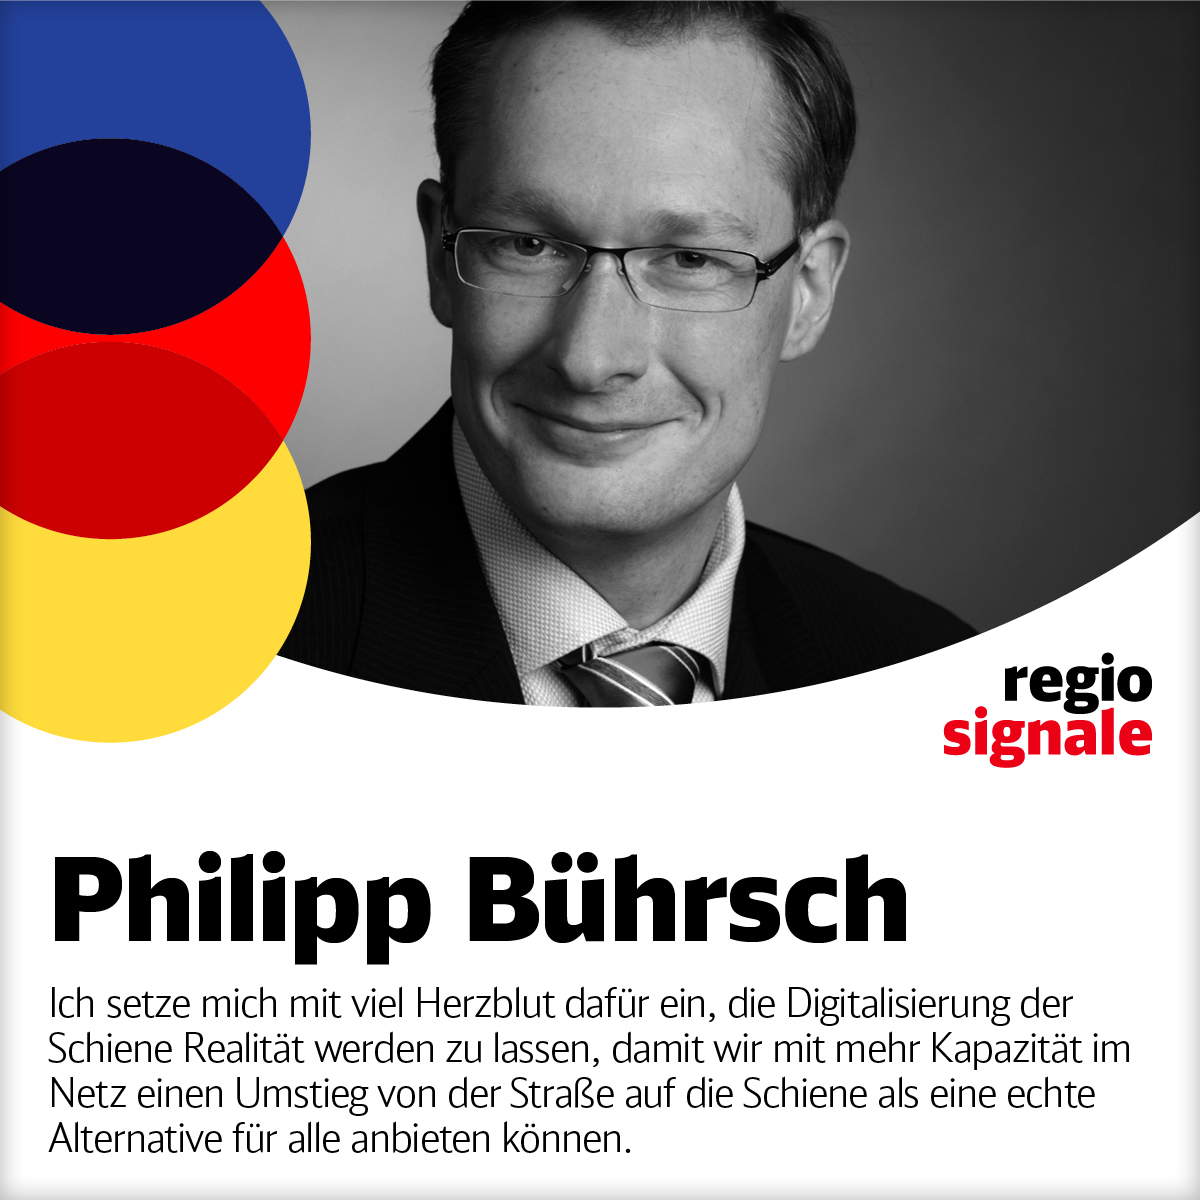 Philipp Bührsch